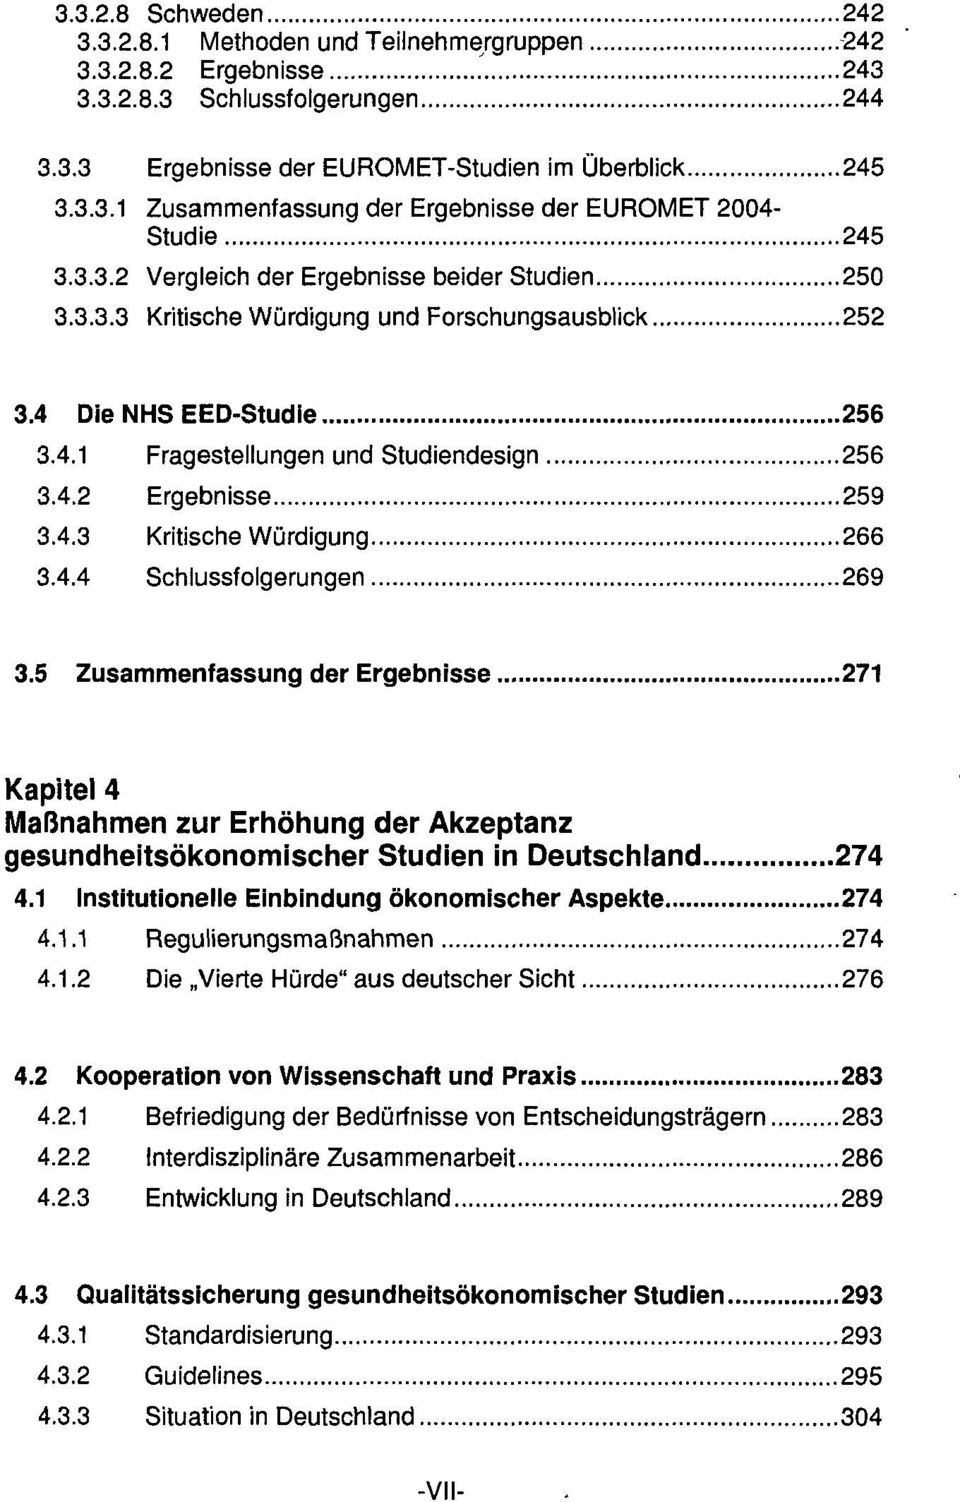 4.3 Kritische Würdigung 266 3.4.4 Schlussfolgerungen 269 3.5 Zusammenfassung der Ergebnisse 271 Kapitel 4 Maßnahmen zur Erhöhung der Akzeptanz gesundheitsökonomischer Studien in Deutschland 274 4.